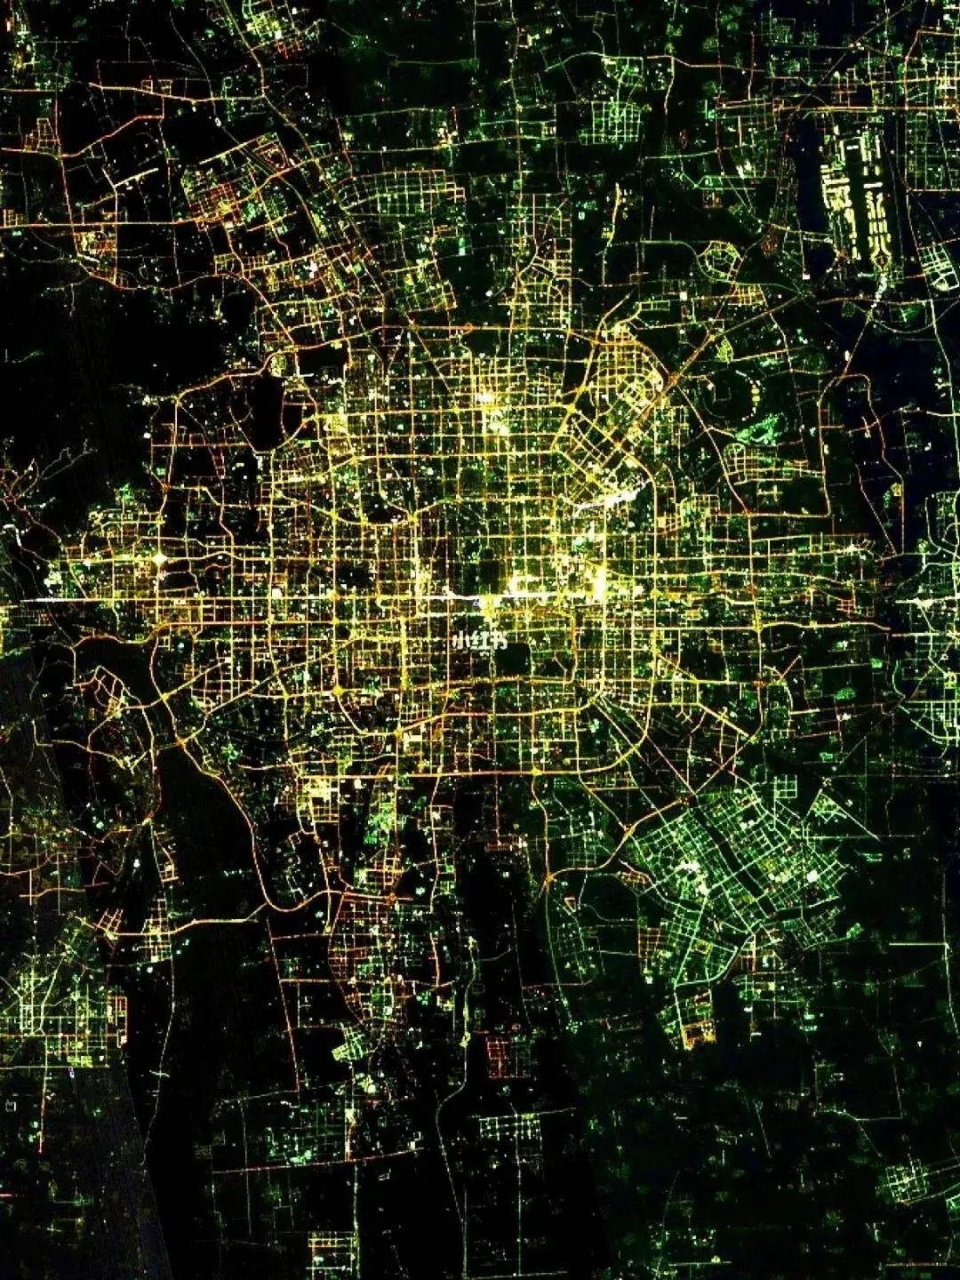 卫星夜晚灯光图,大家能猜出这是哪个城市吗?